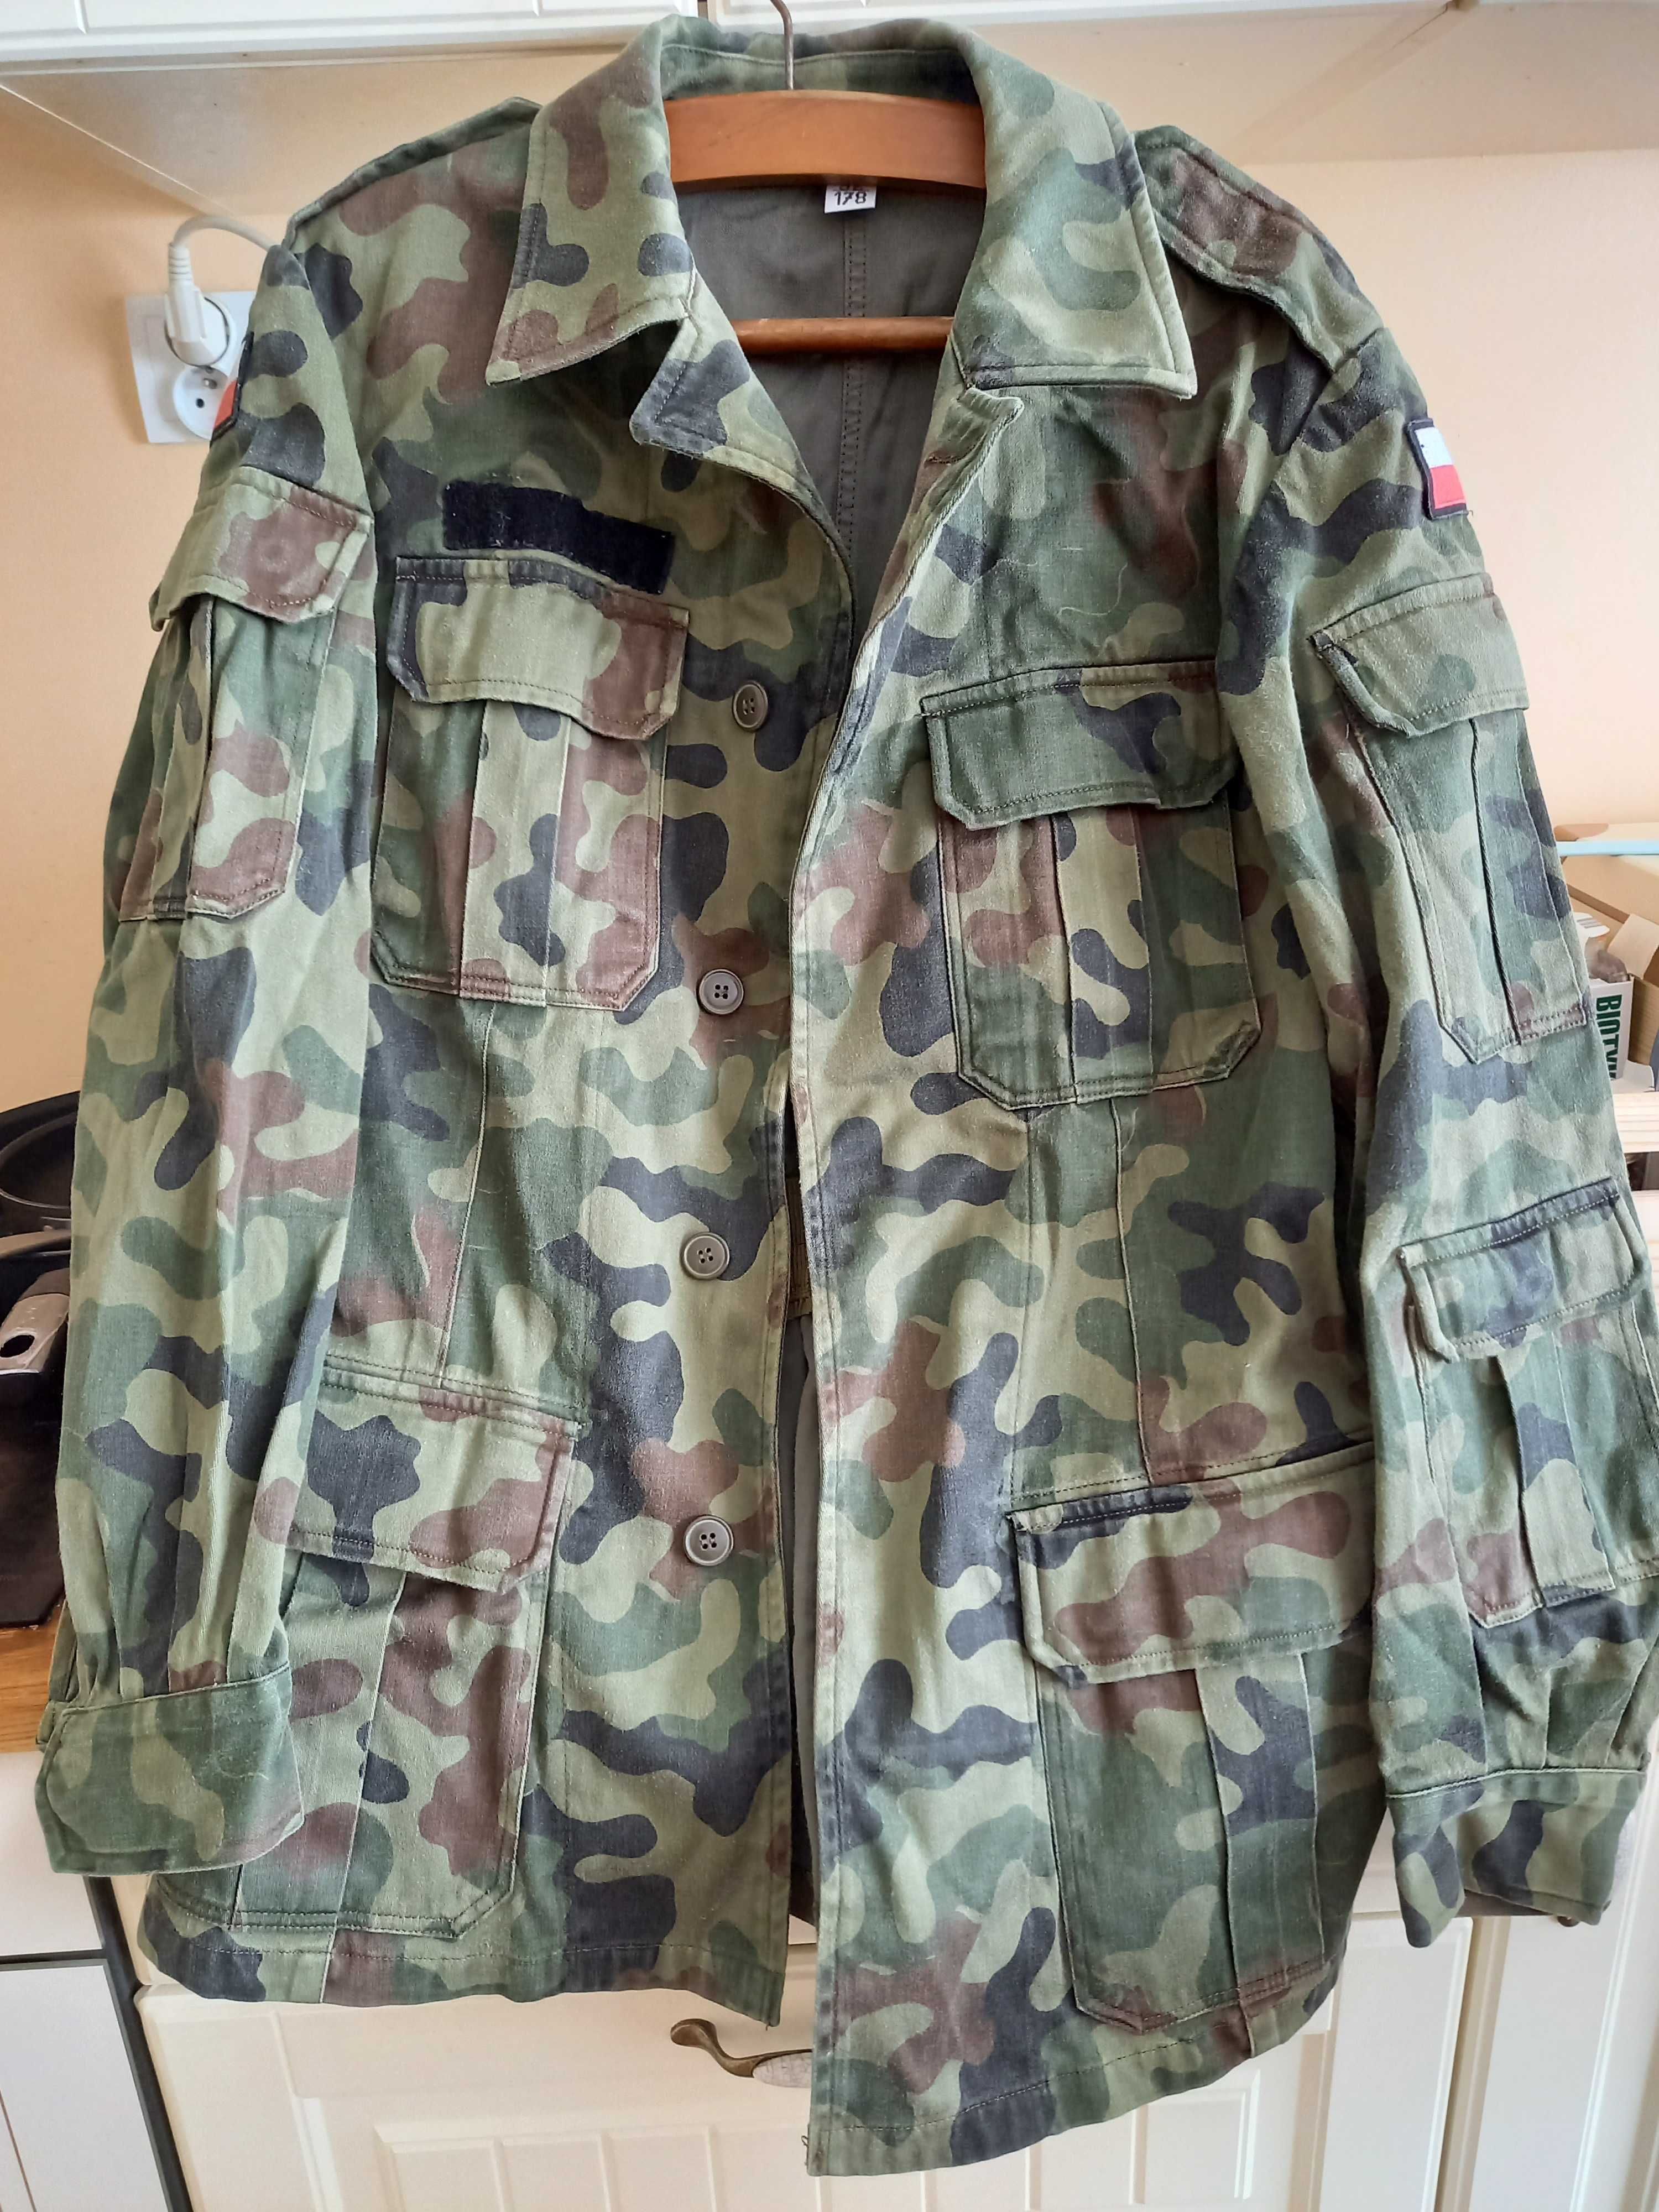 Mundur wojskowy orginał,2 zestawy,spodnie kurtka